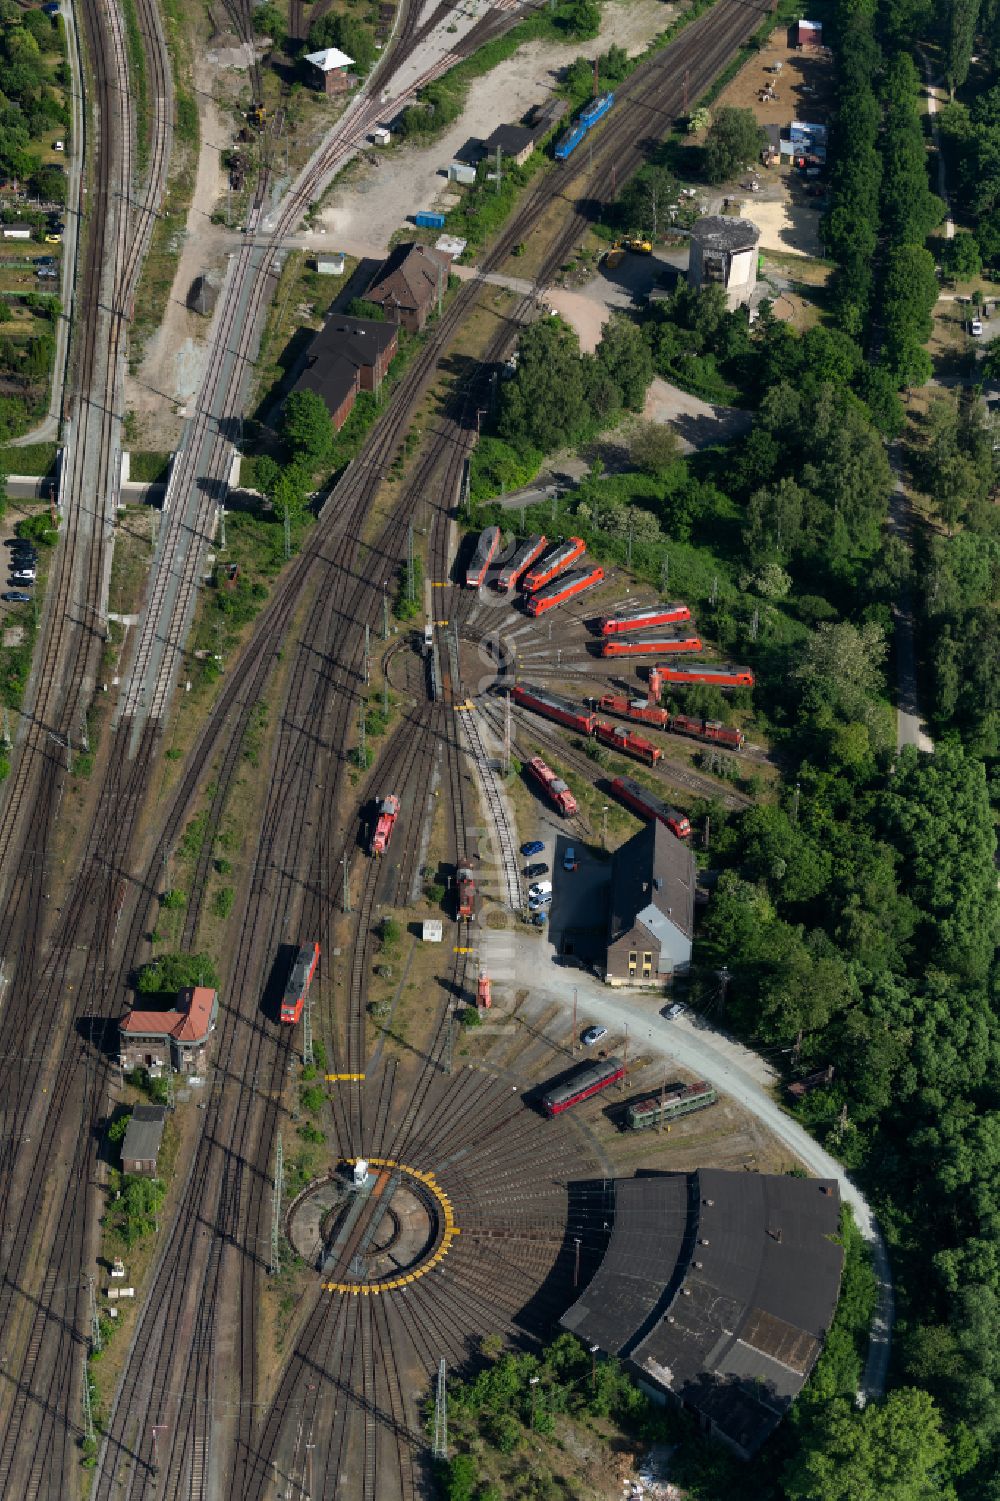 Bremen von oben - Drehscheibe am Depot des Bahn- Betriebswerkes am Rangierbahnhof in Bremen, Deutschland